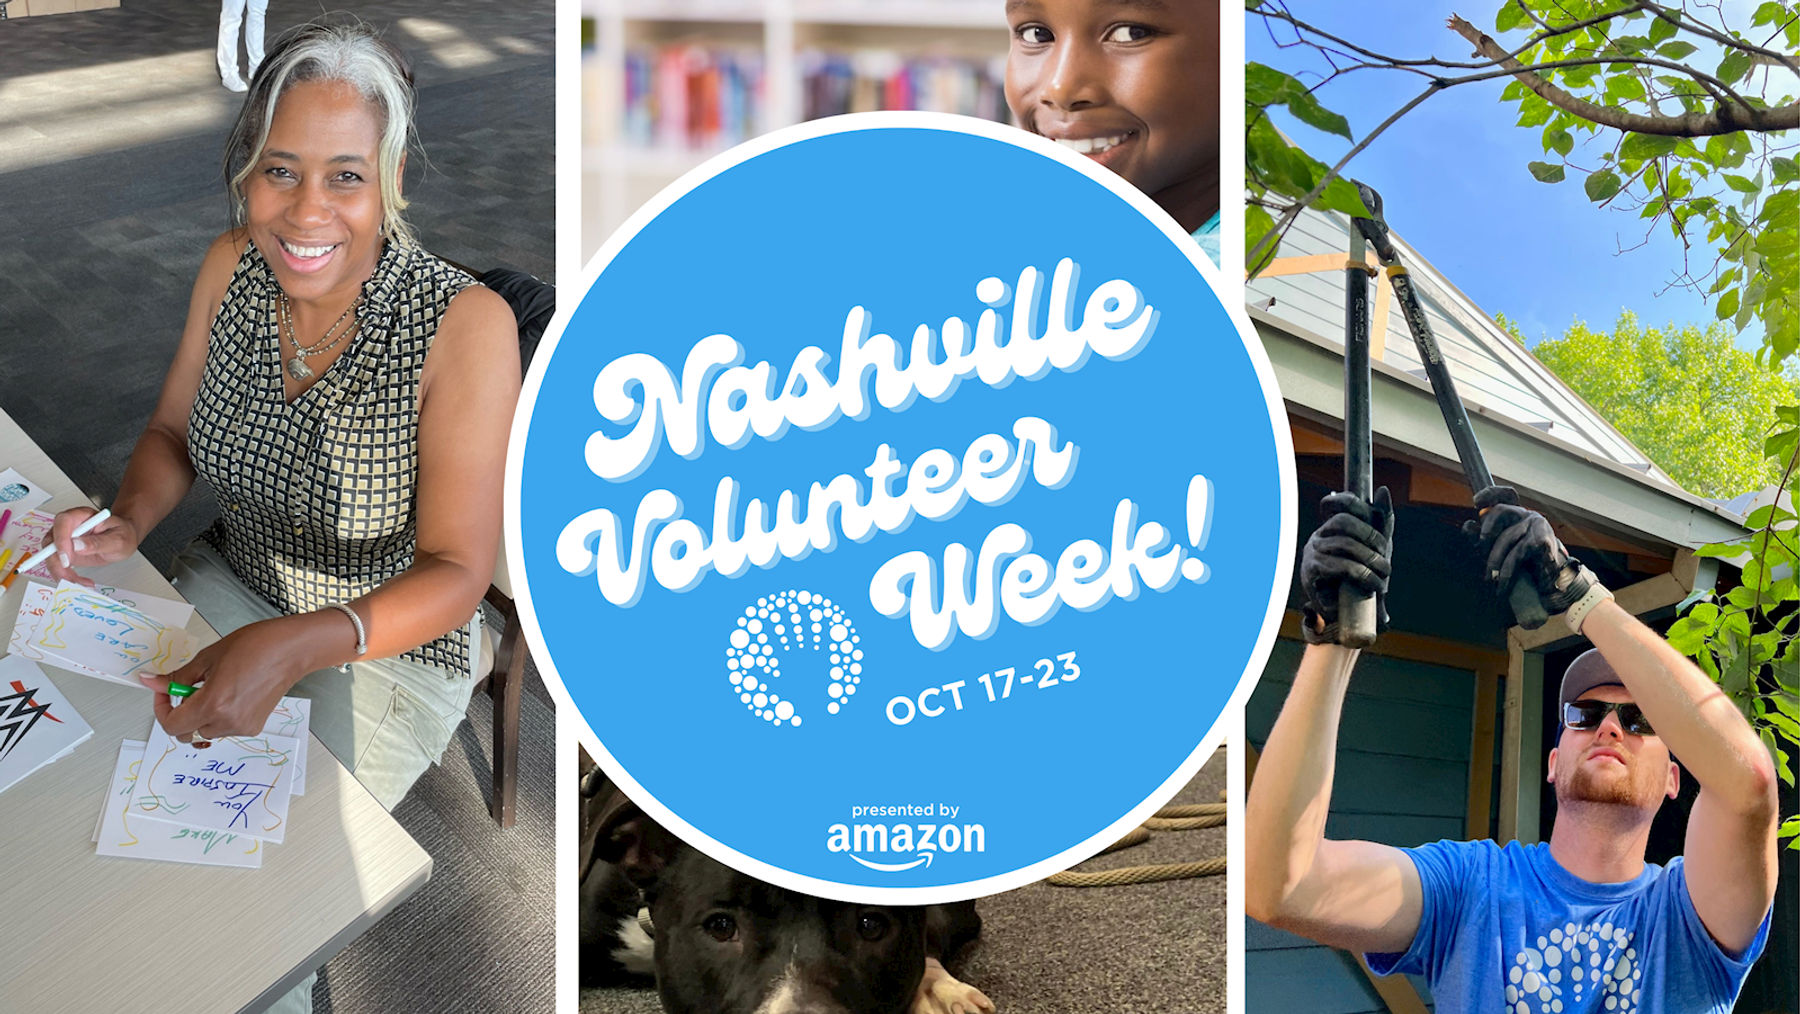 Nashville Volunteer Week with Hands On Nashville Downtown Nashville